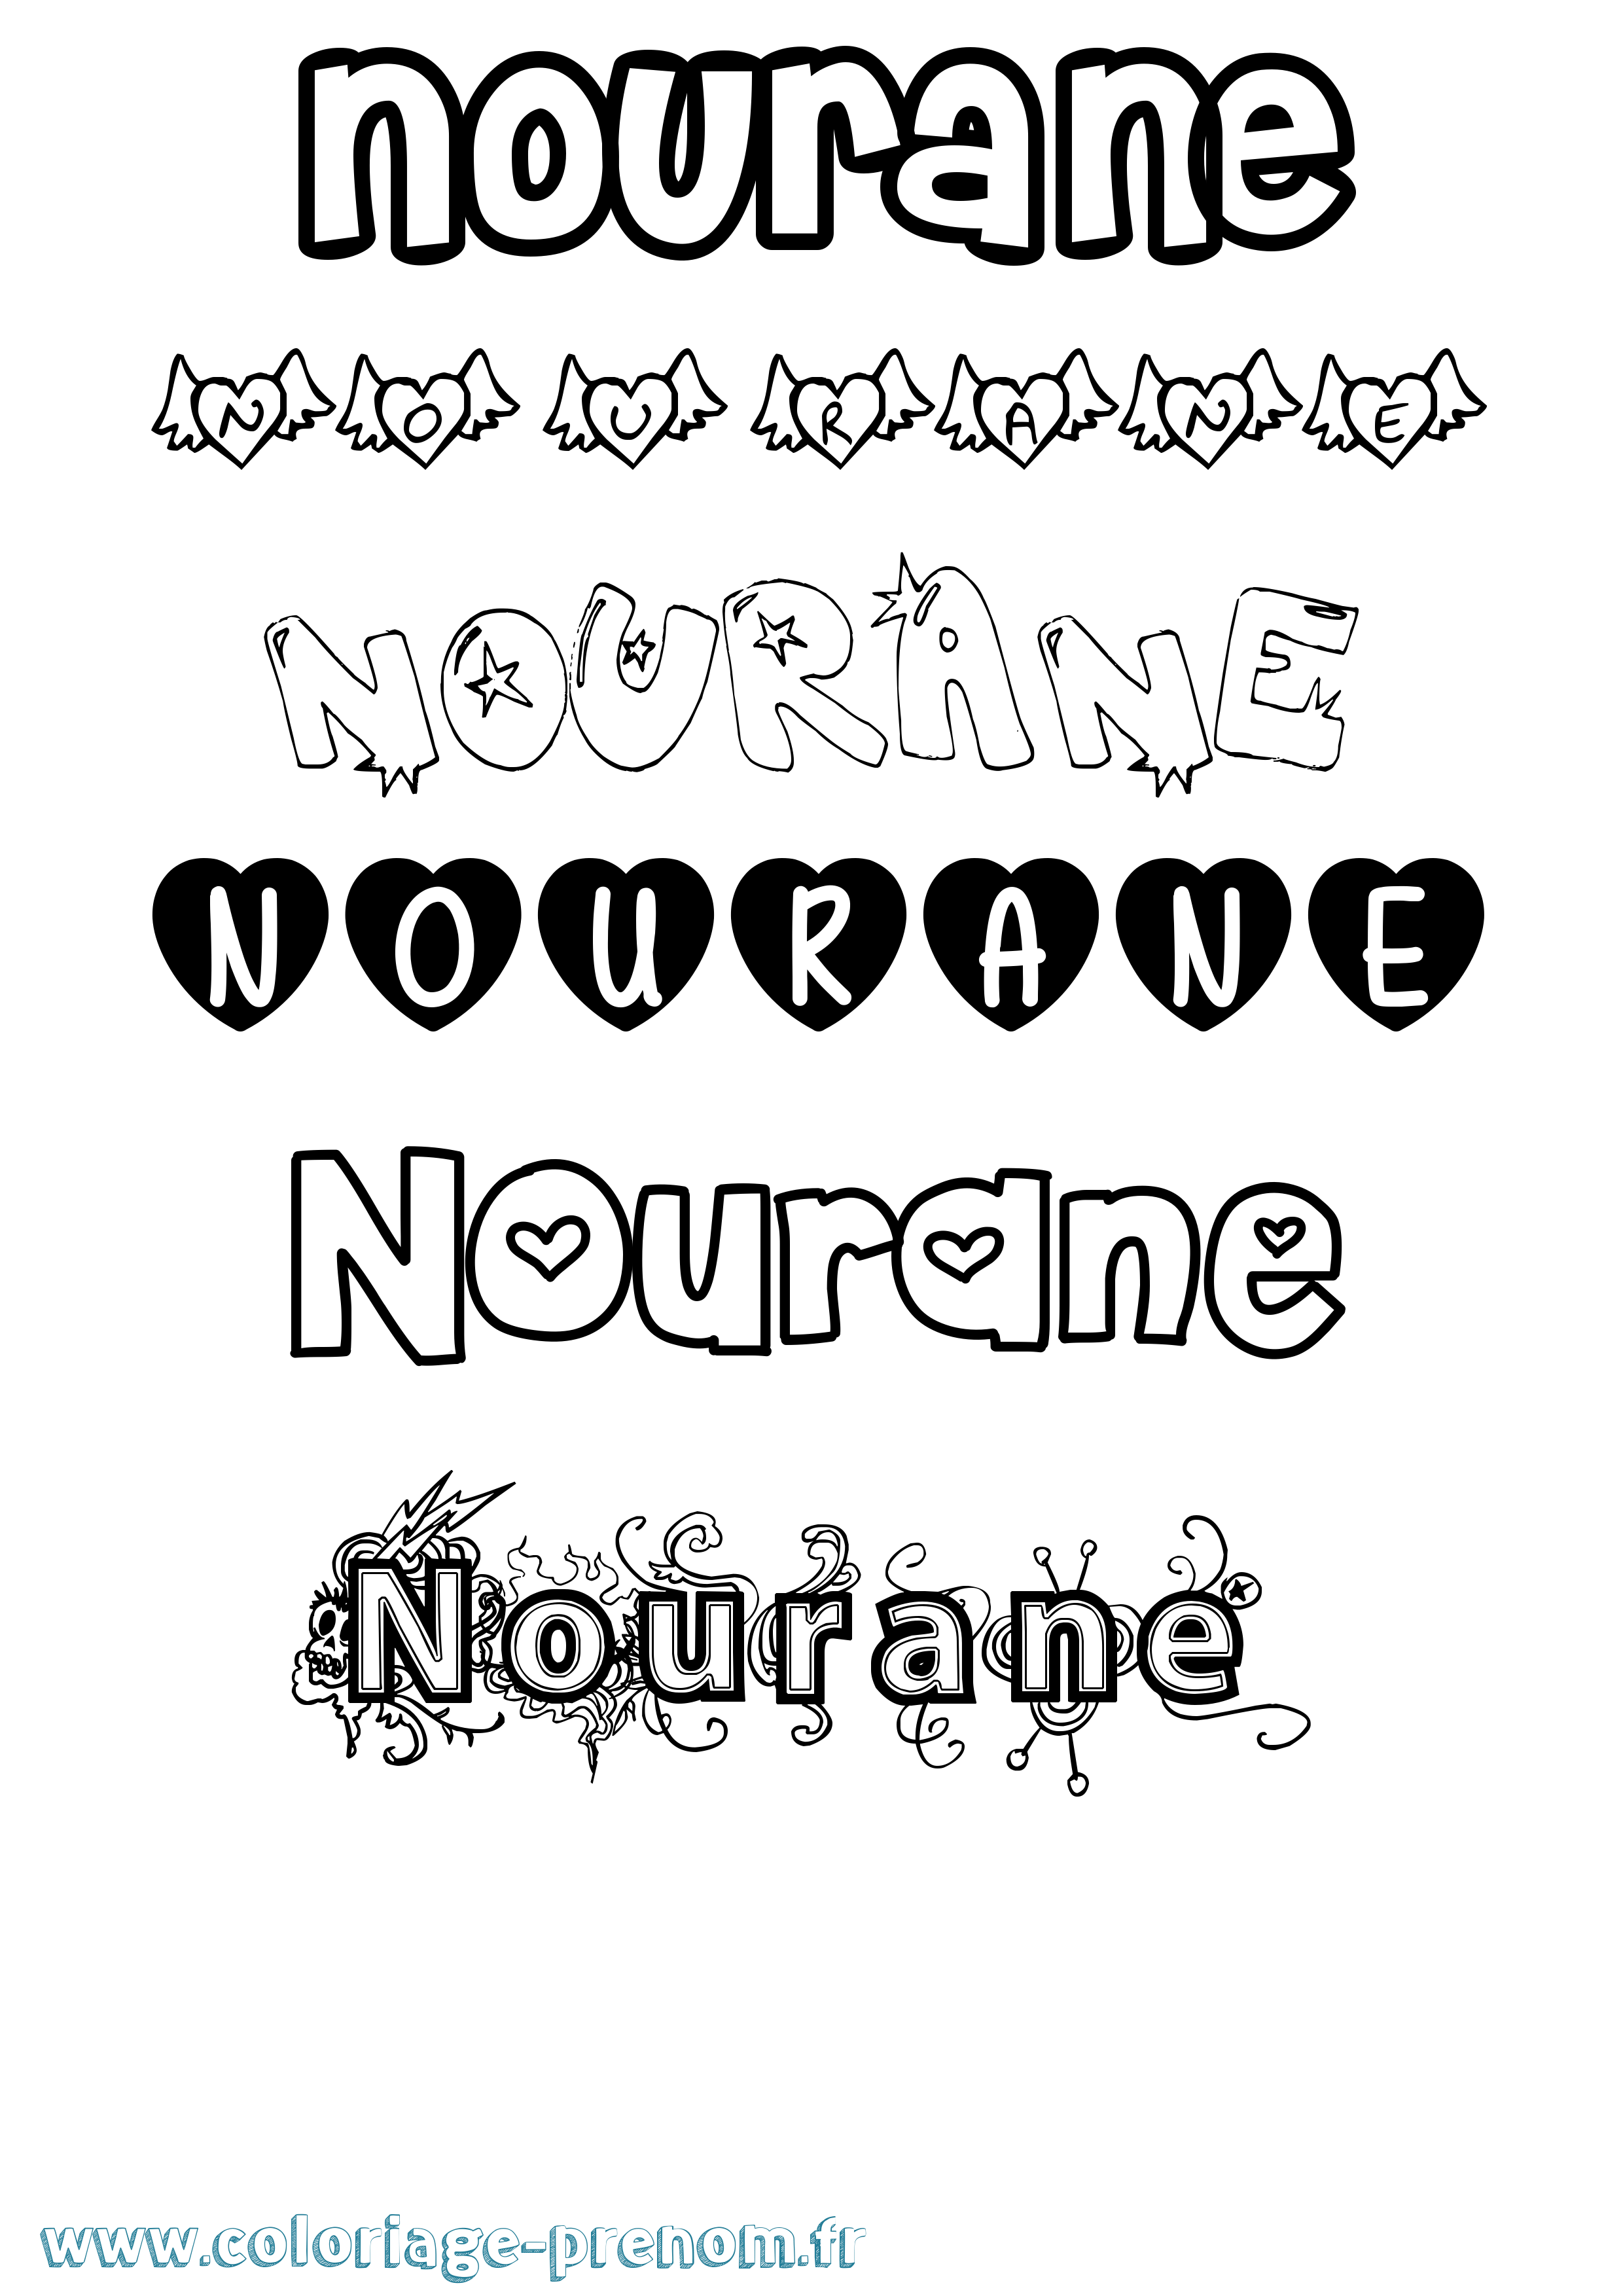 Coloriage prénom Nourane